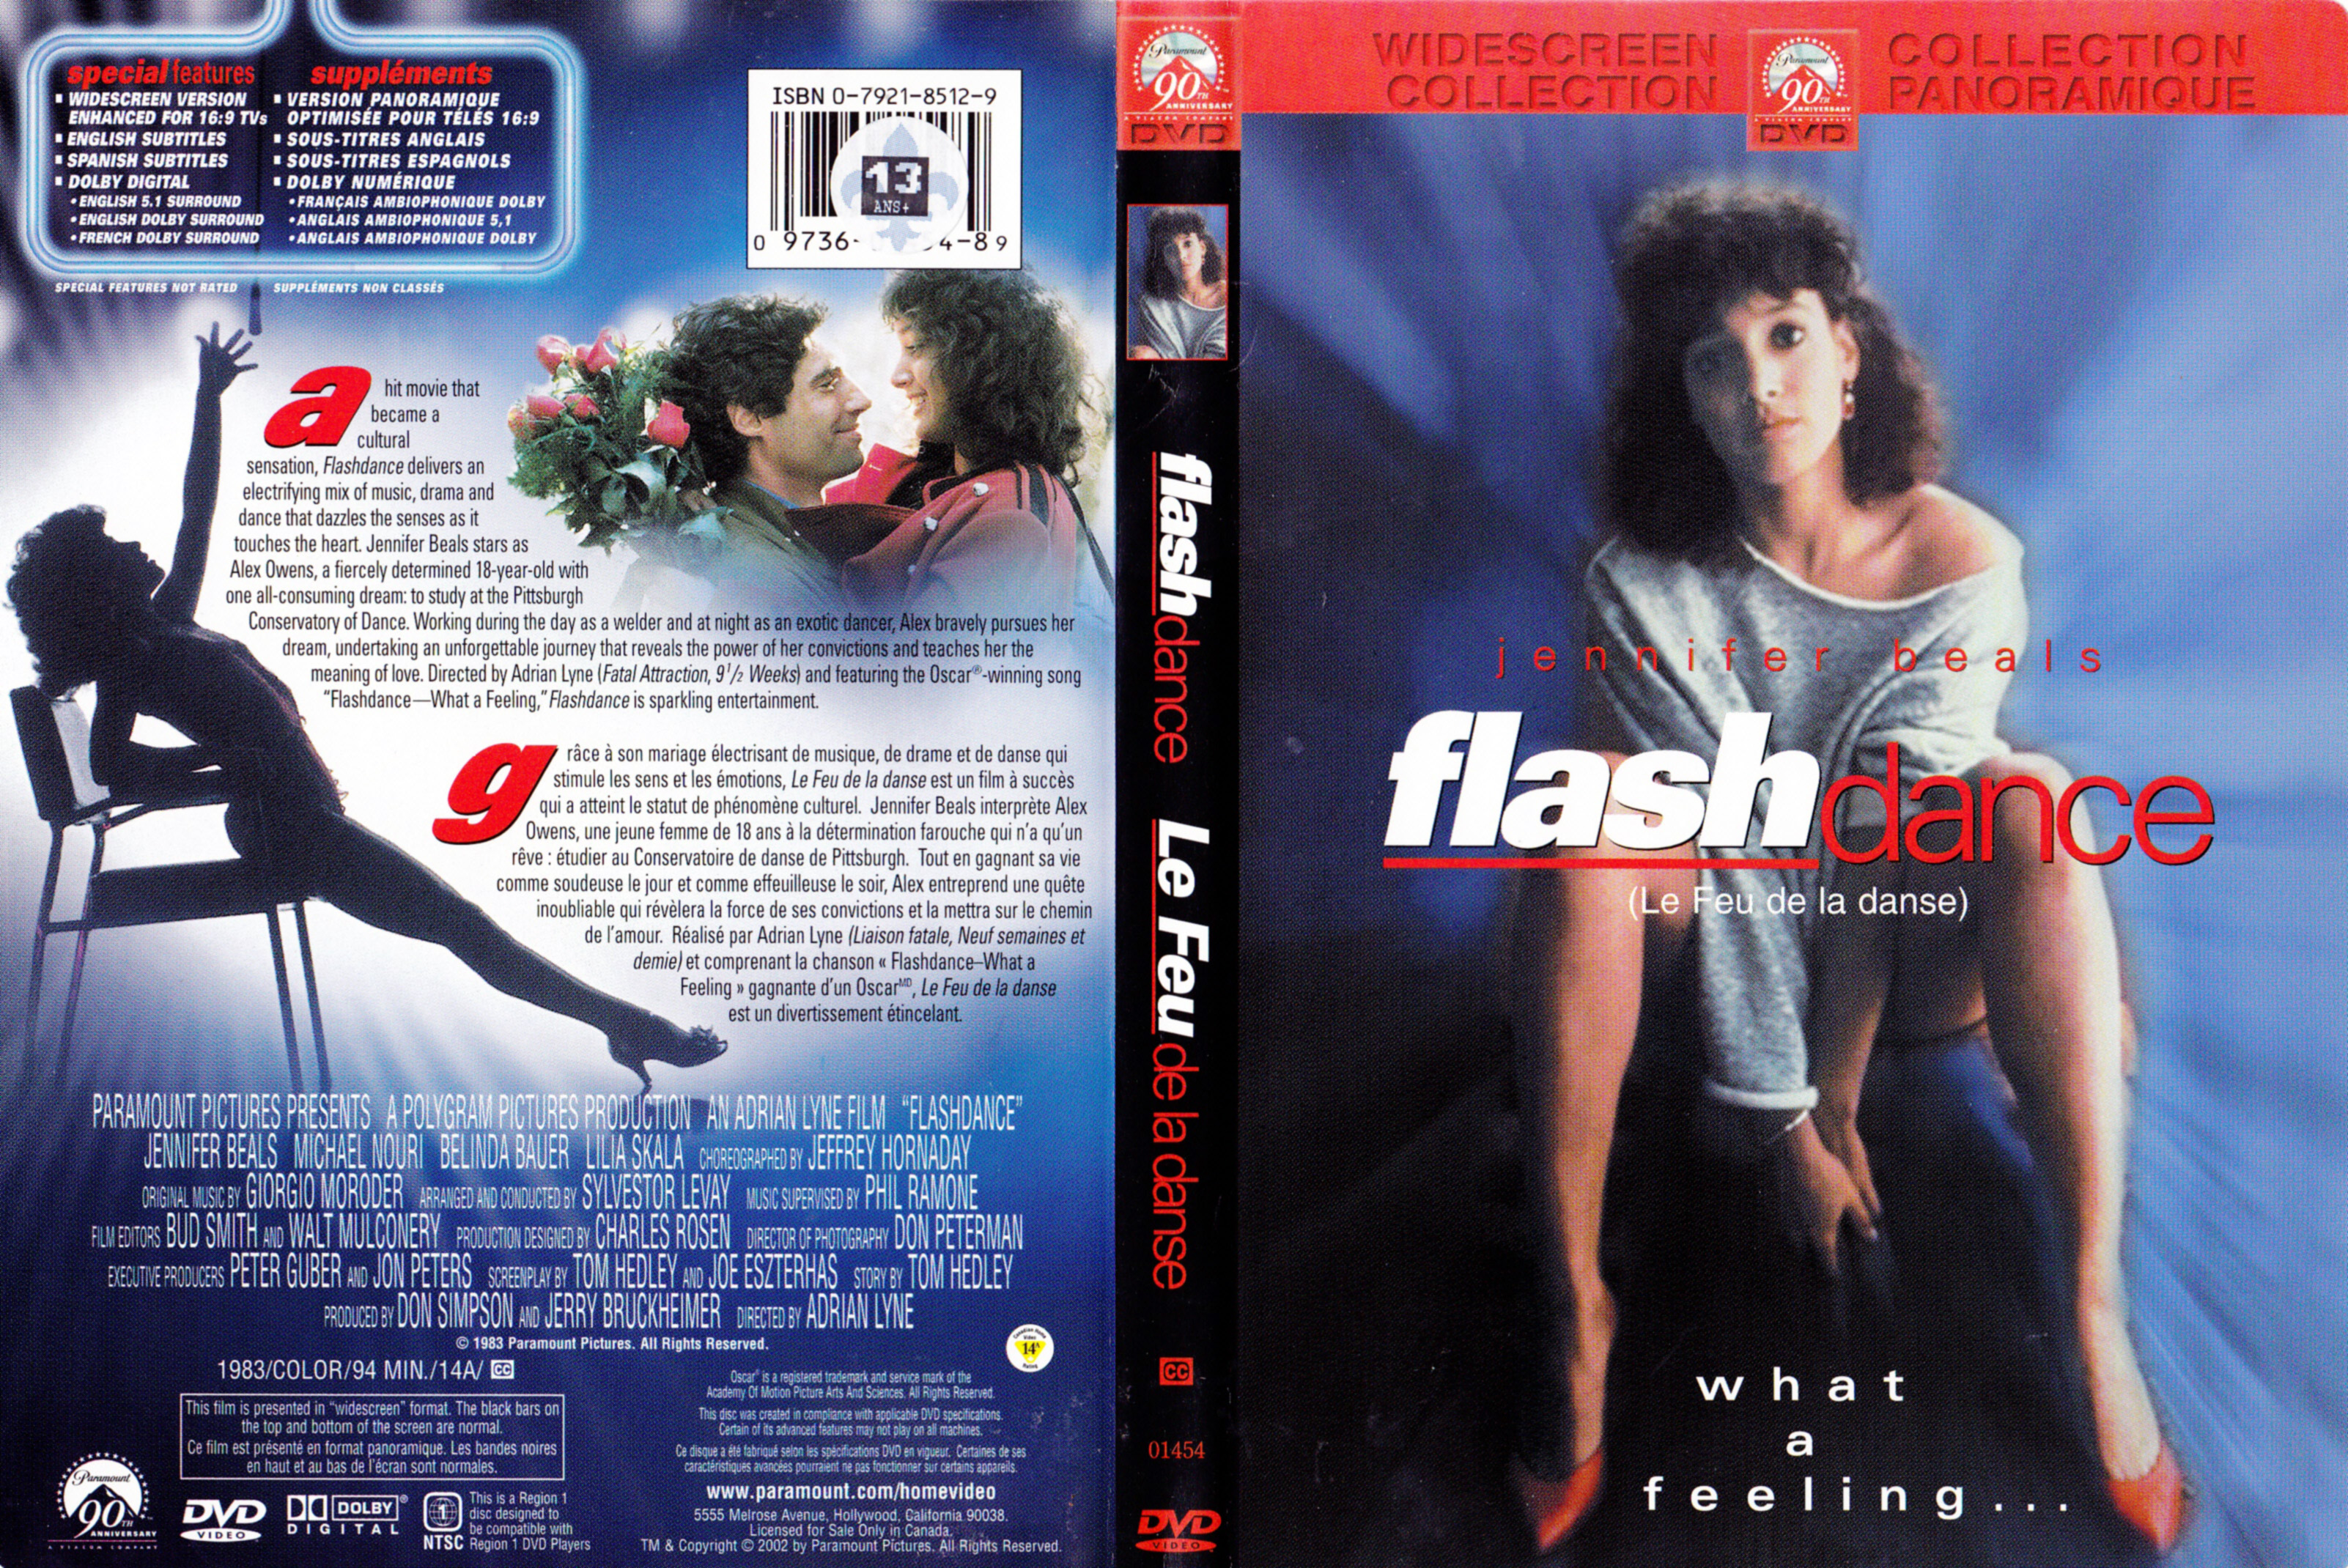 Jaquette DVD Flash dance - Le feu de la danse (Canadieknne)